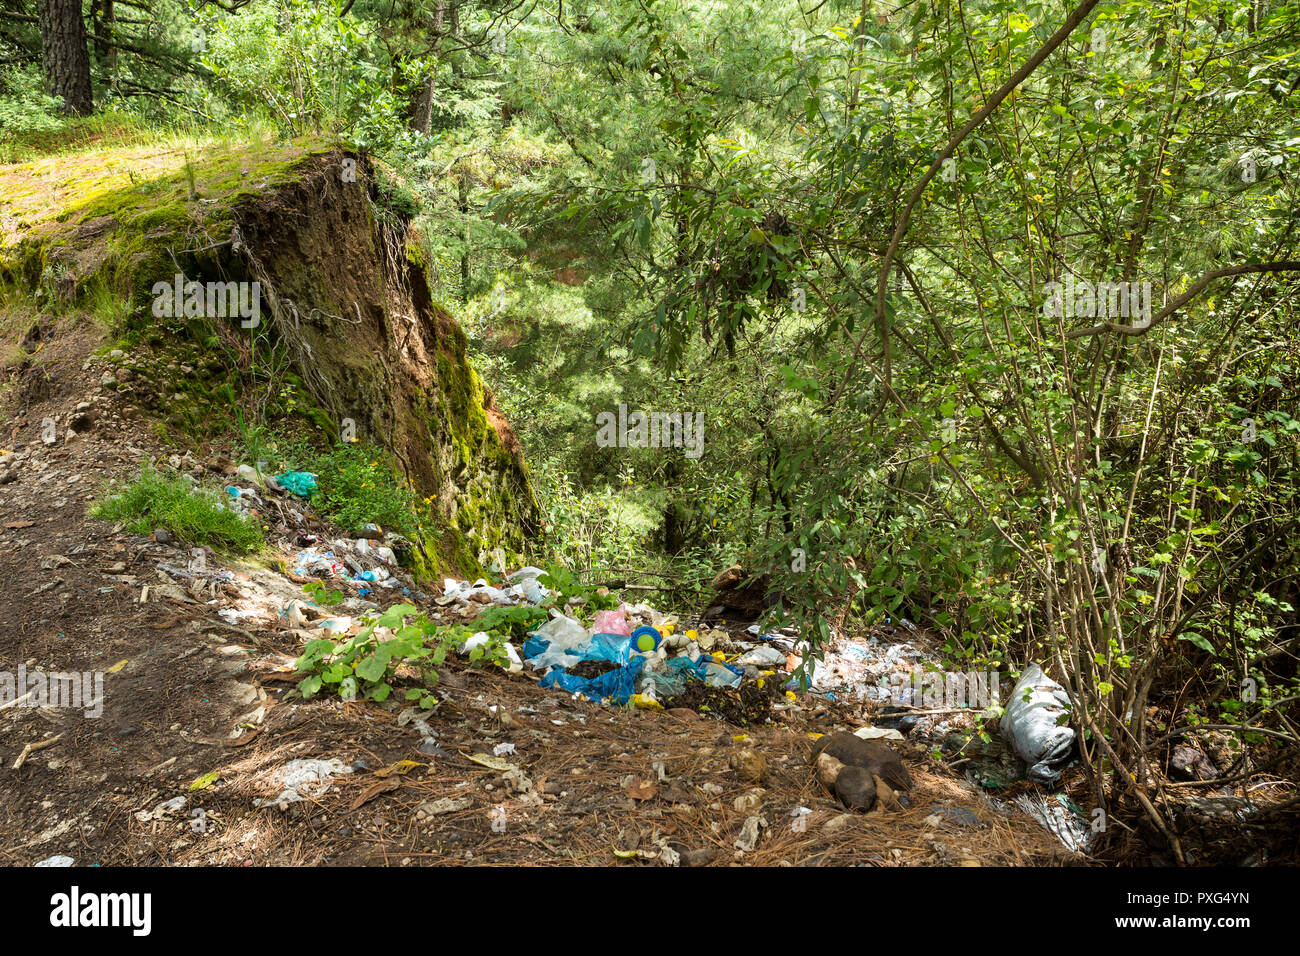 Garbage oggetto di dumping nei boschi Foto Stock